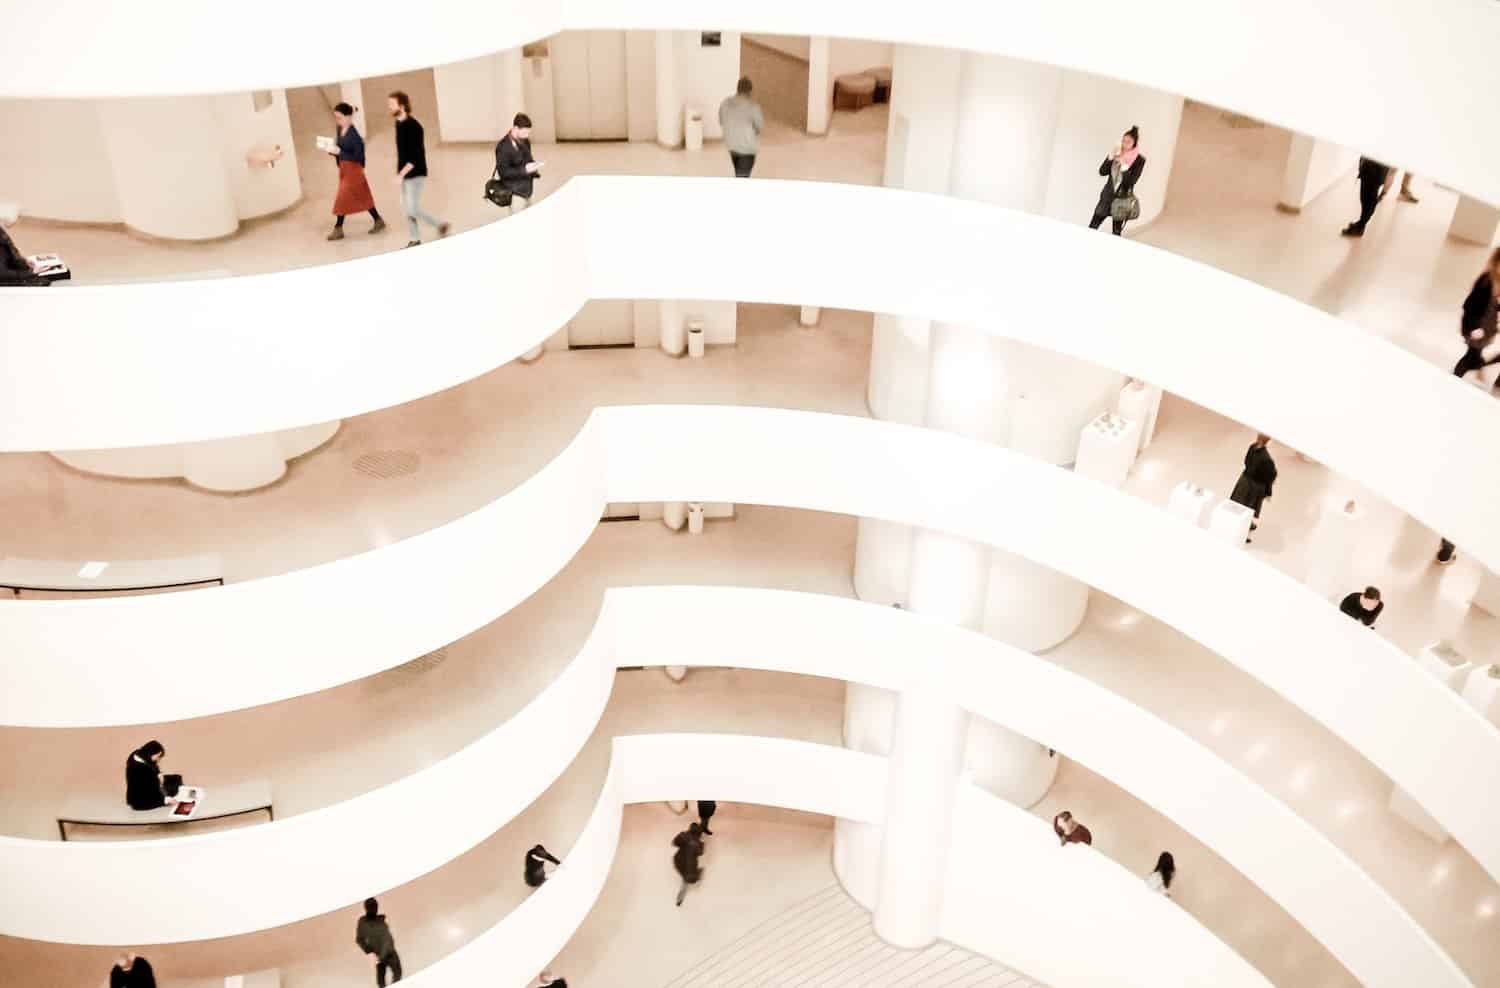 Guggenheim Museum New York City